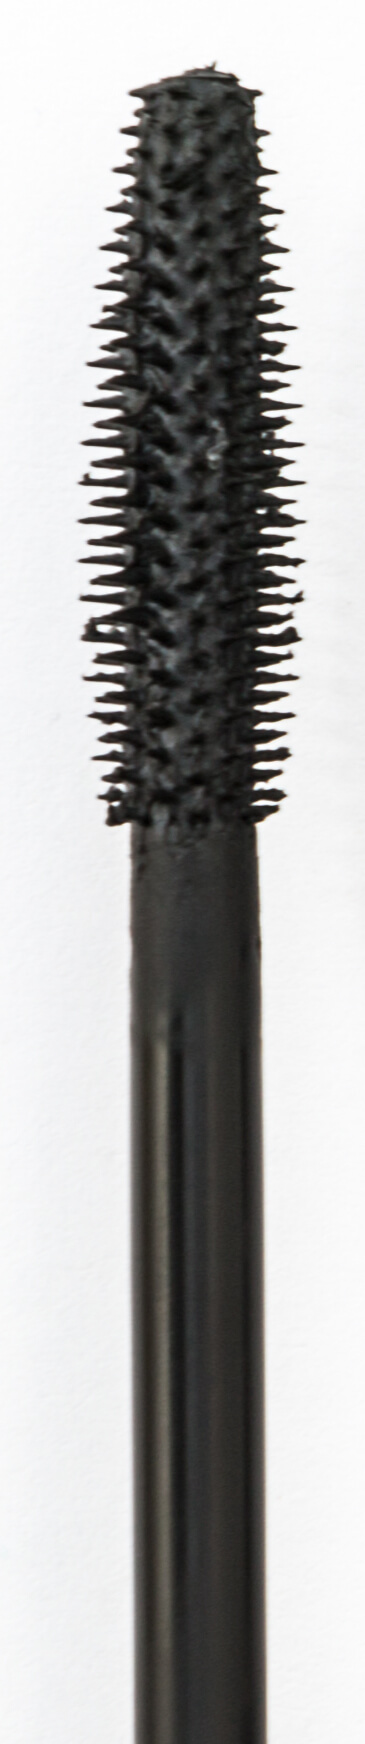 Comb bristle wand